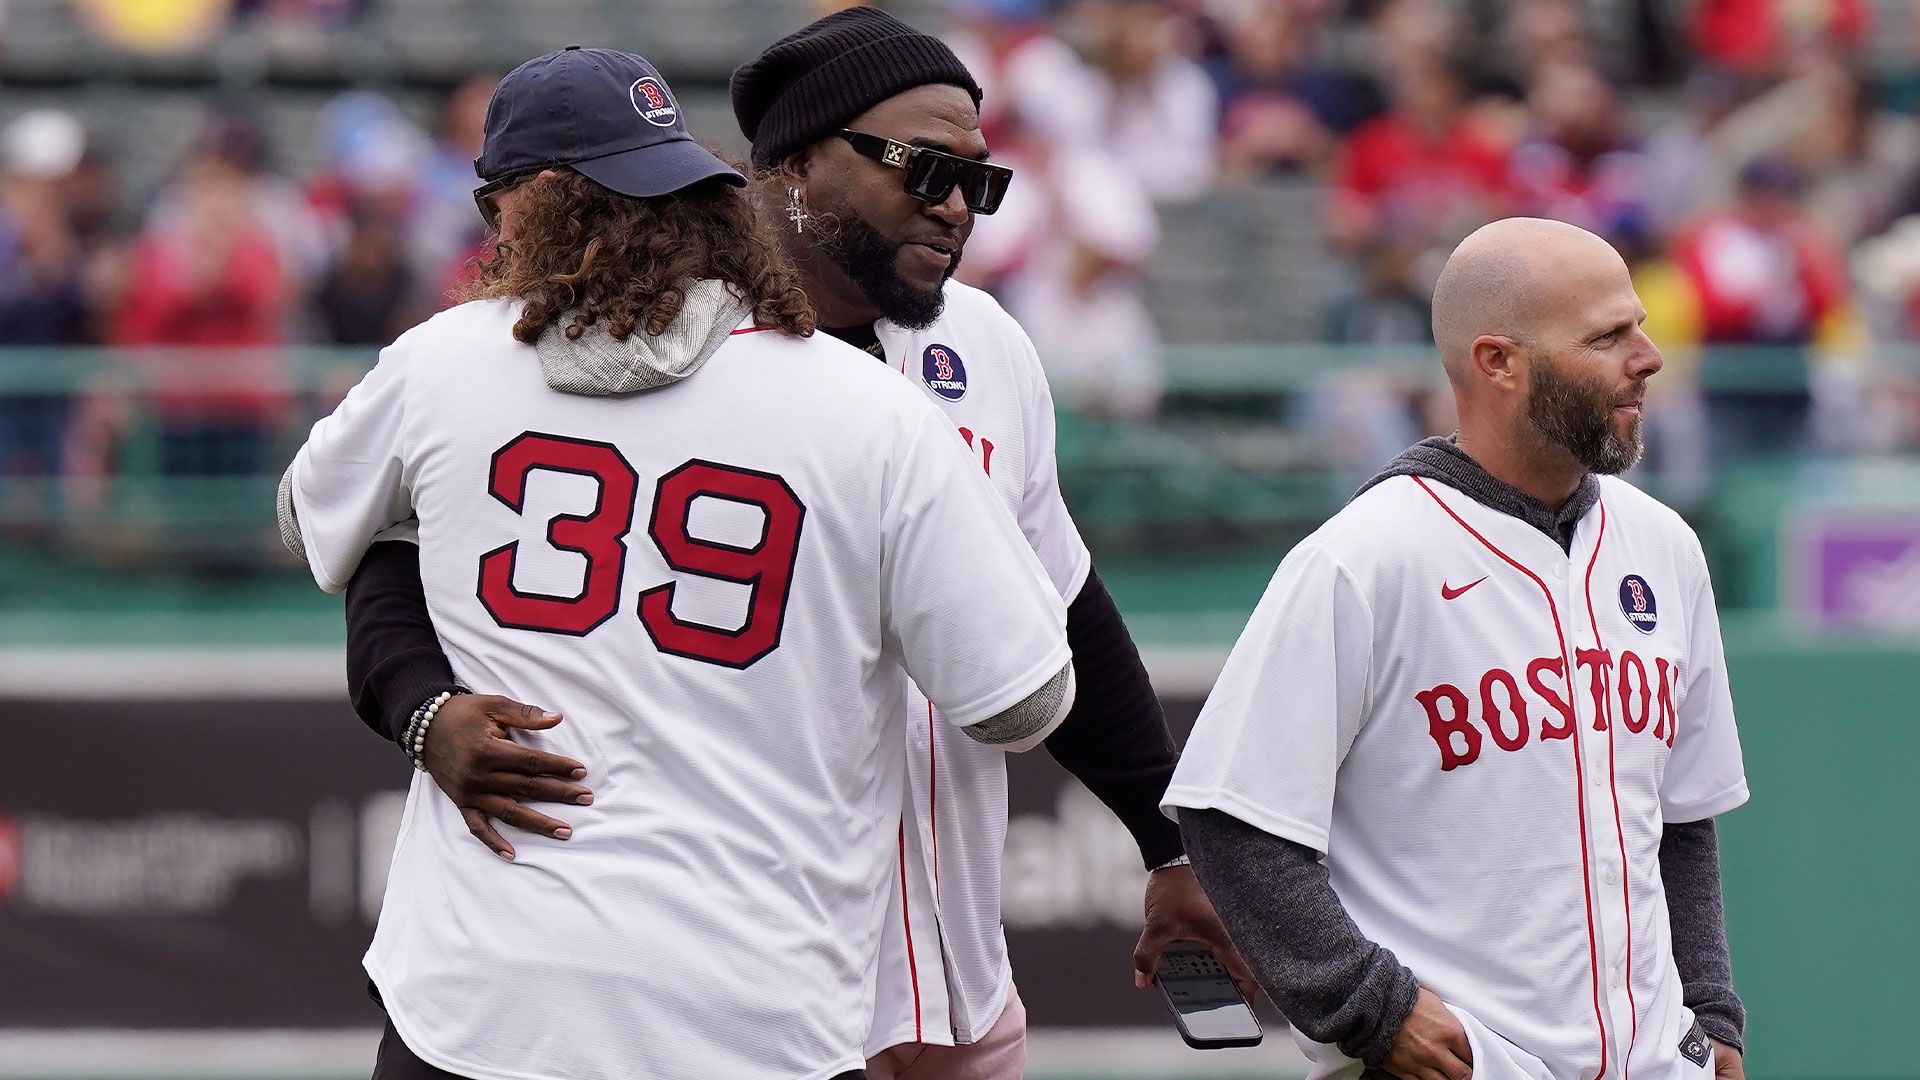 2013 Red Sox championship team reunites at Fenway Park